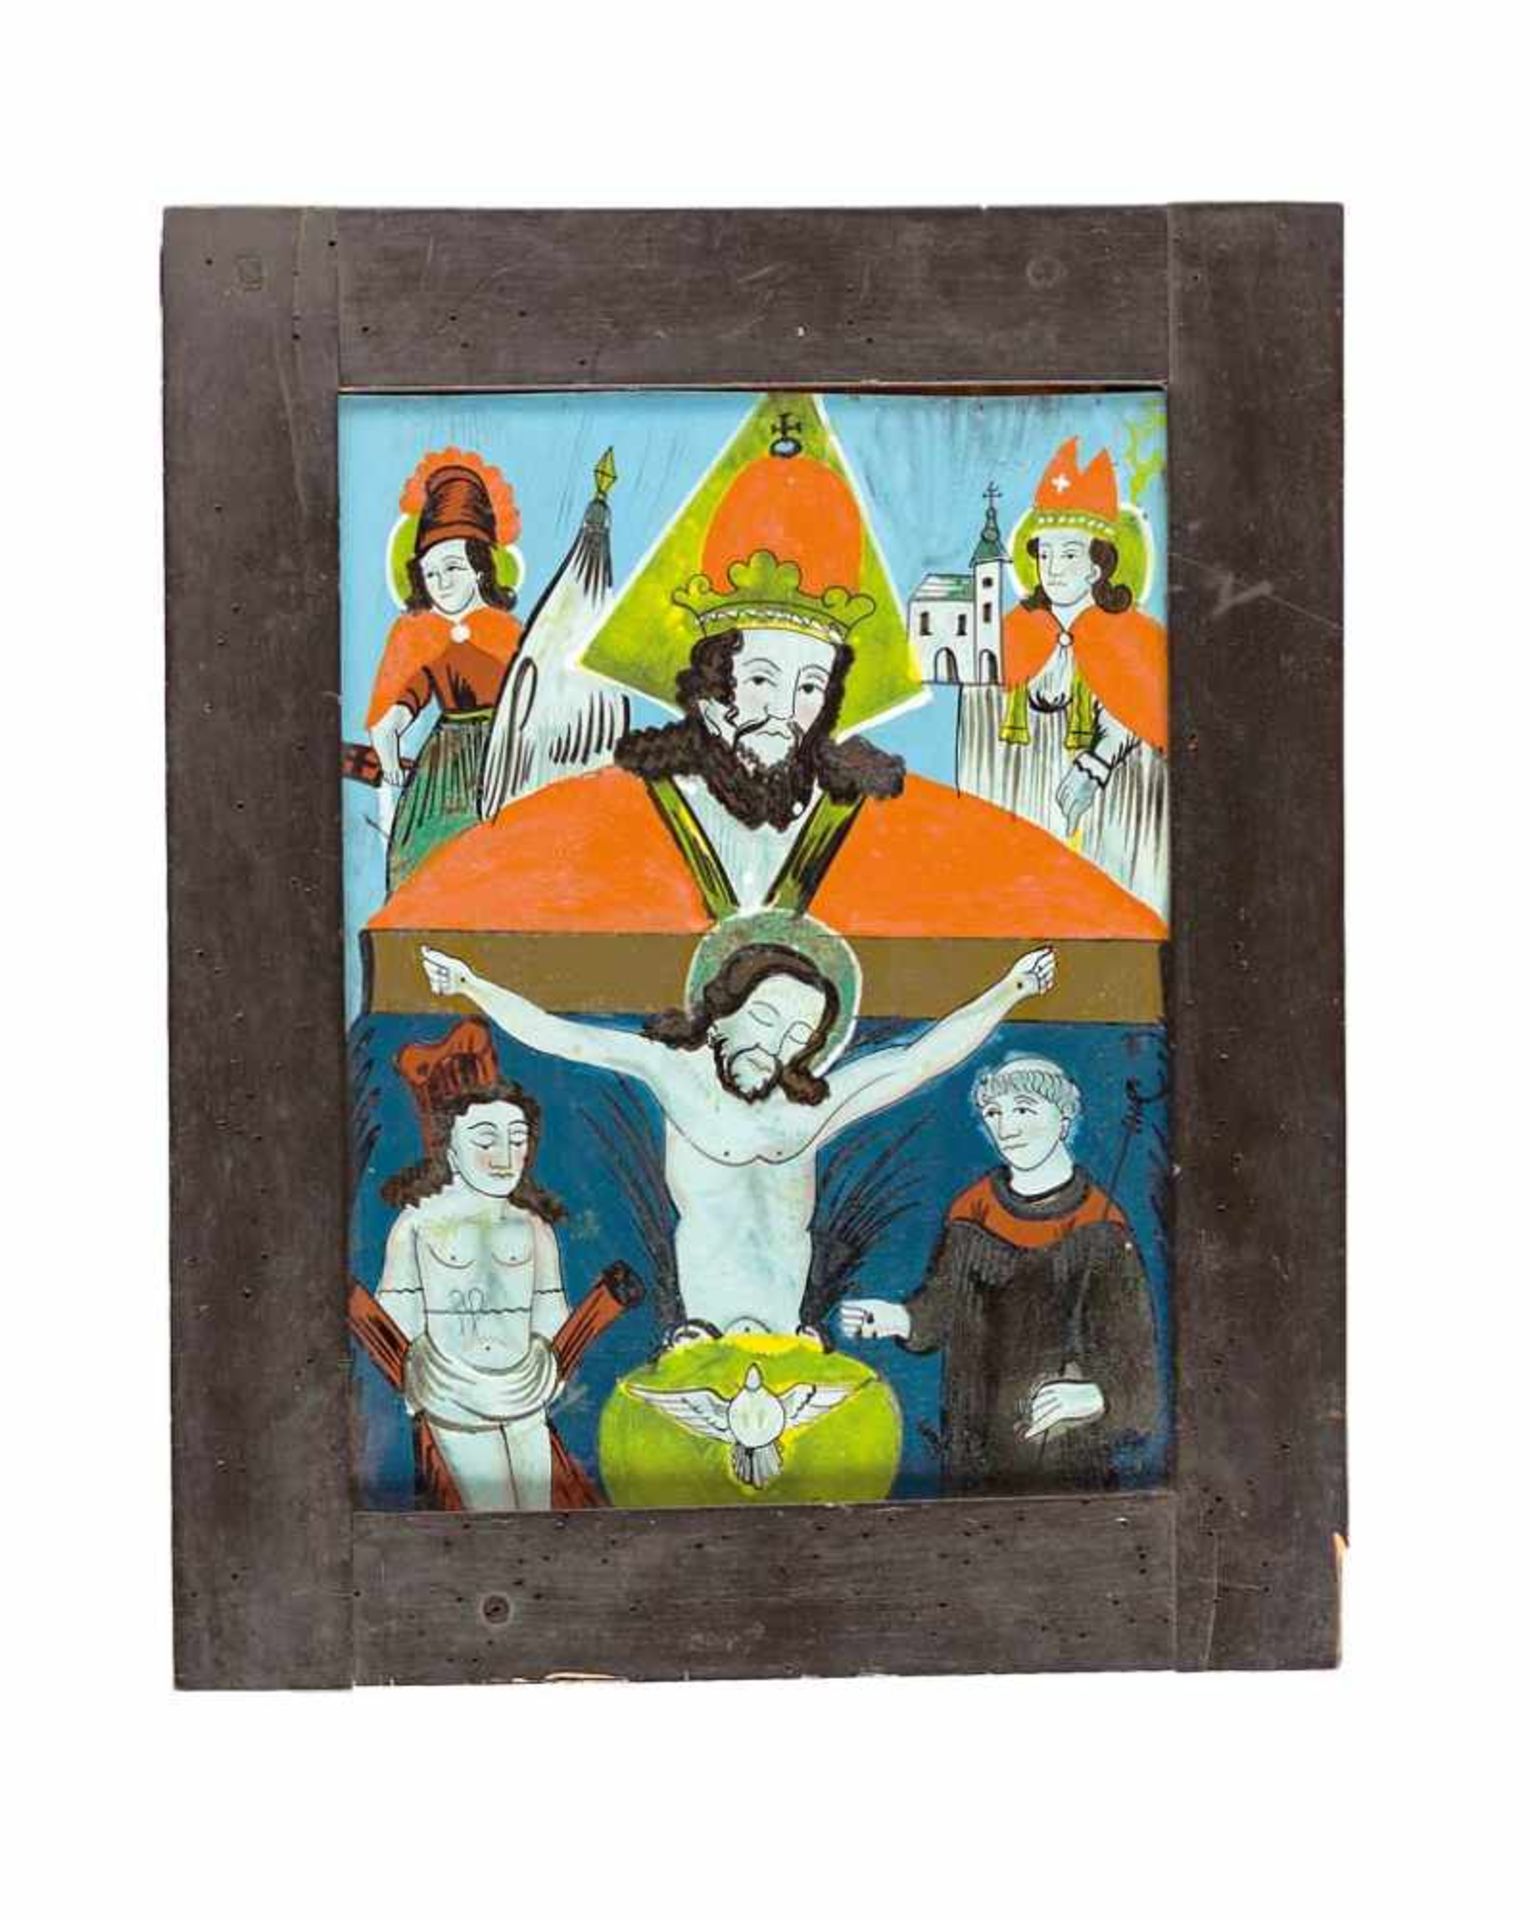 Dreifaltigkeit mit vier Heiligen. Raimundsreuth, 19. Jh. 29,5 x 23 cm. R